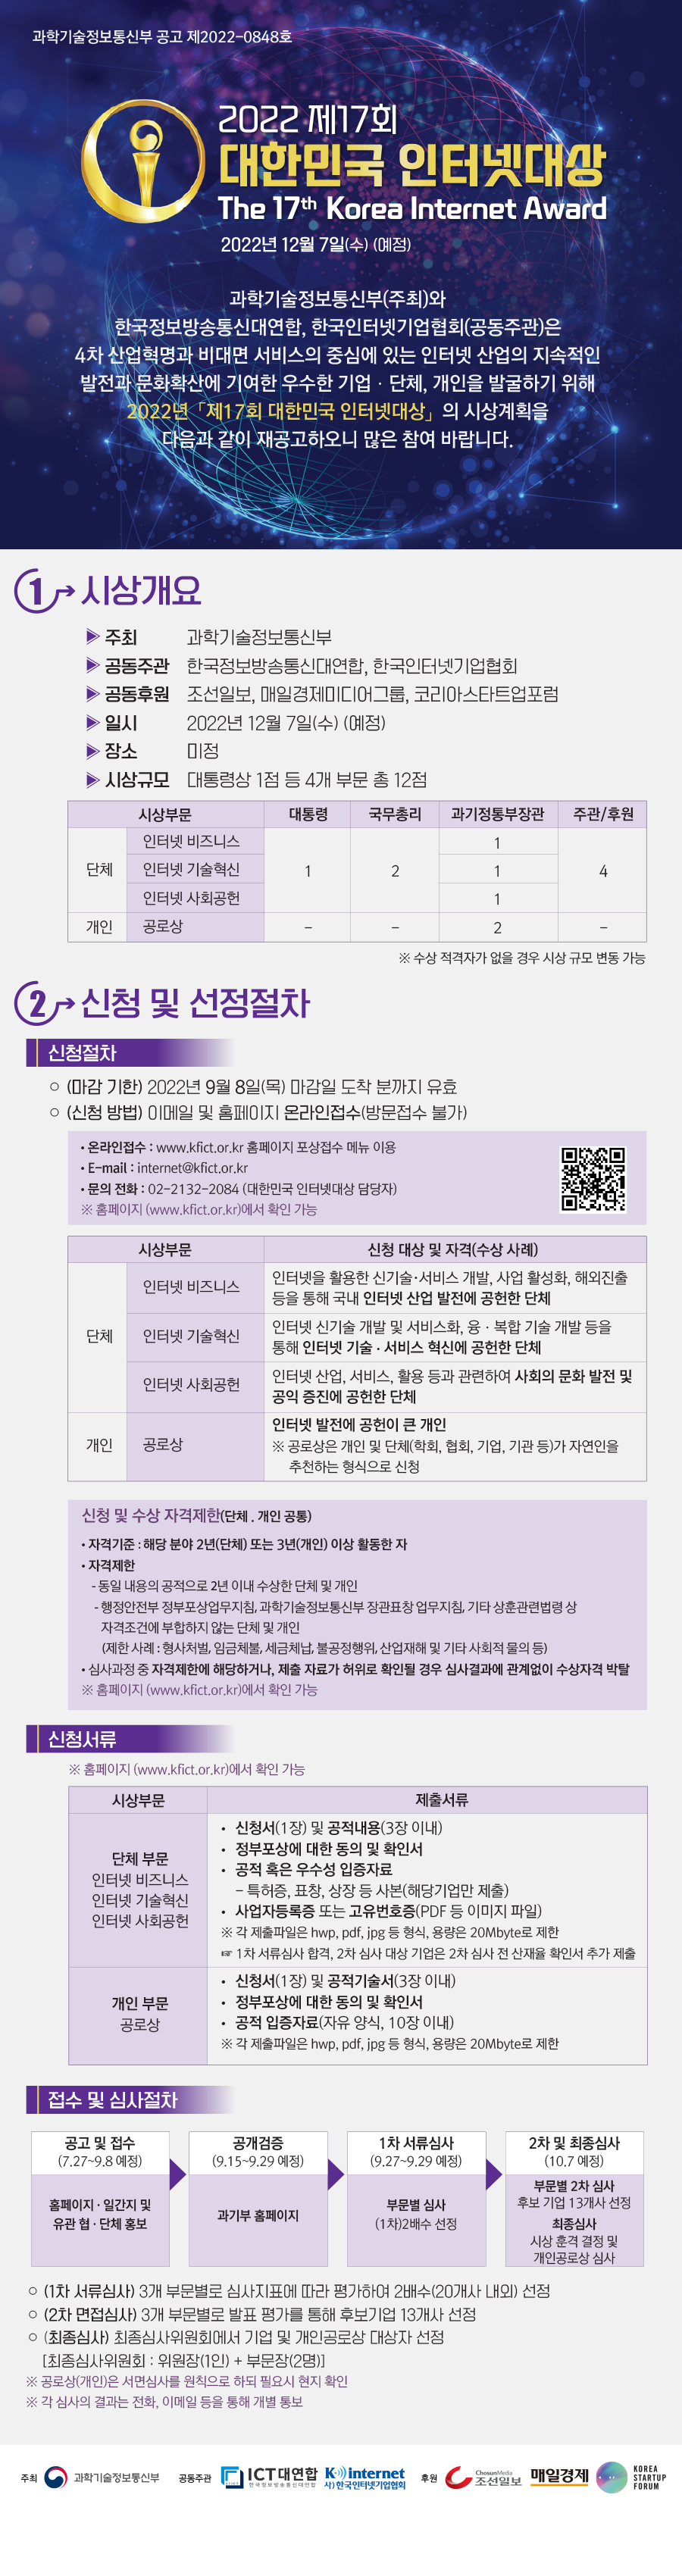 2022 제17회 대한민국 인터넷대상 시상계획 재공고